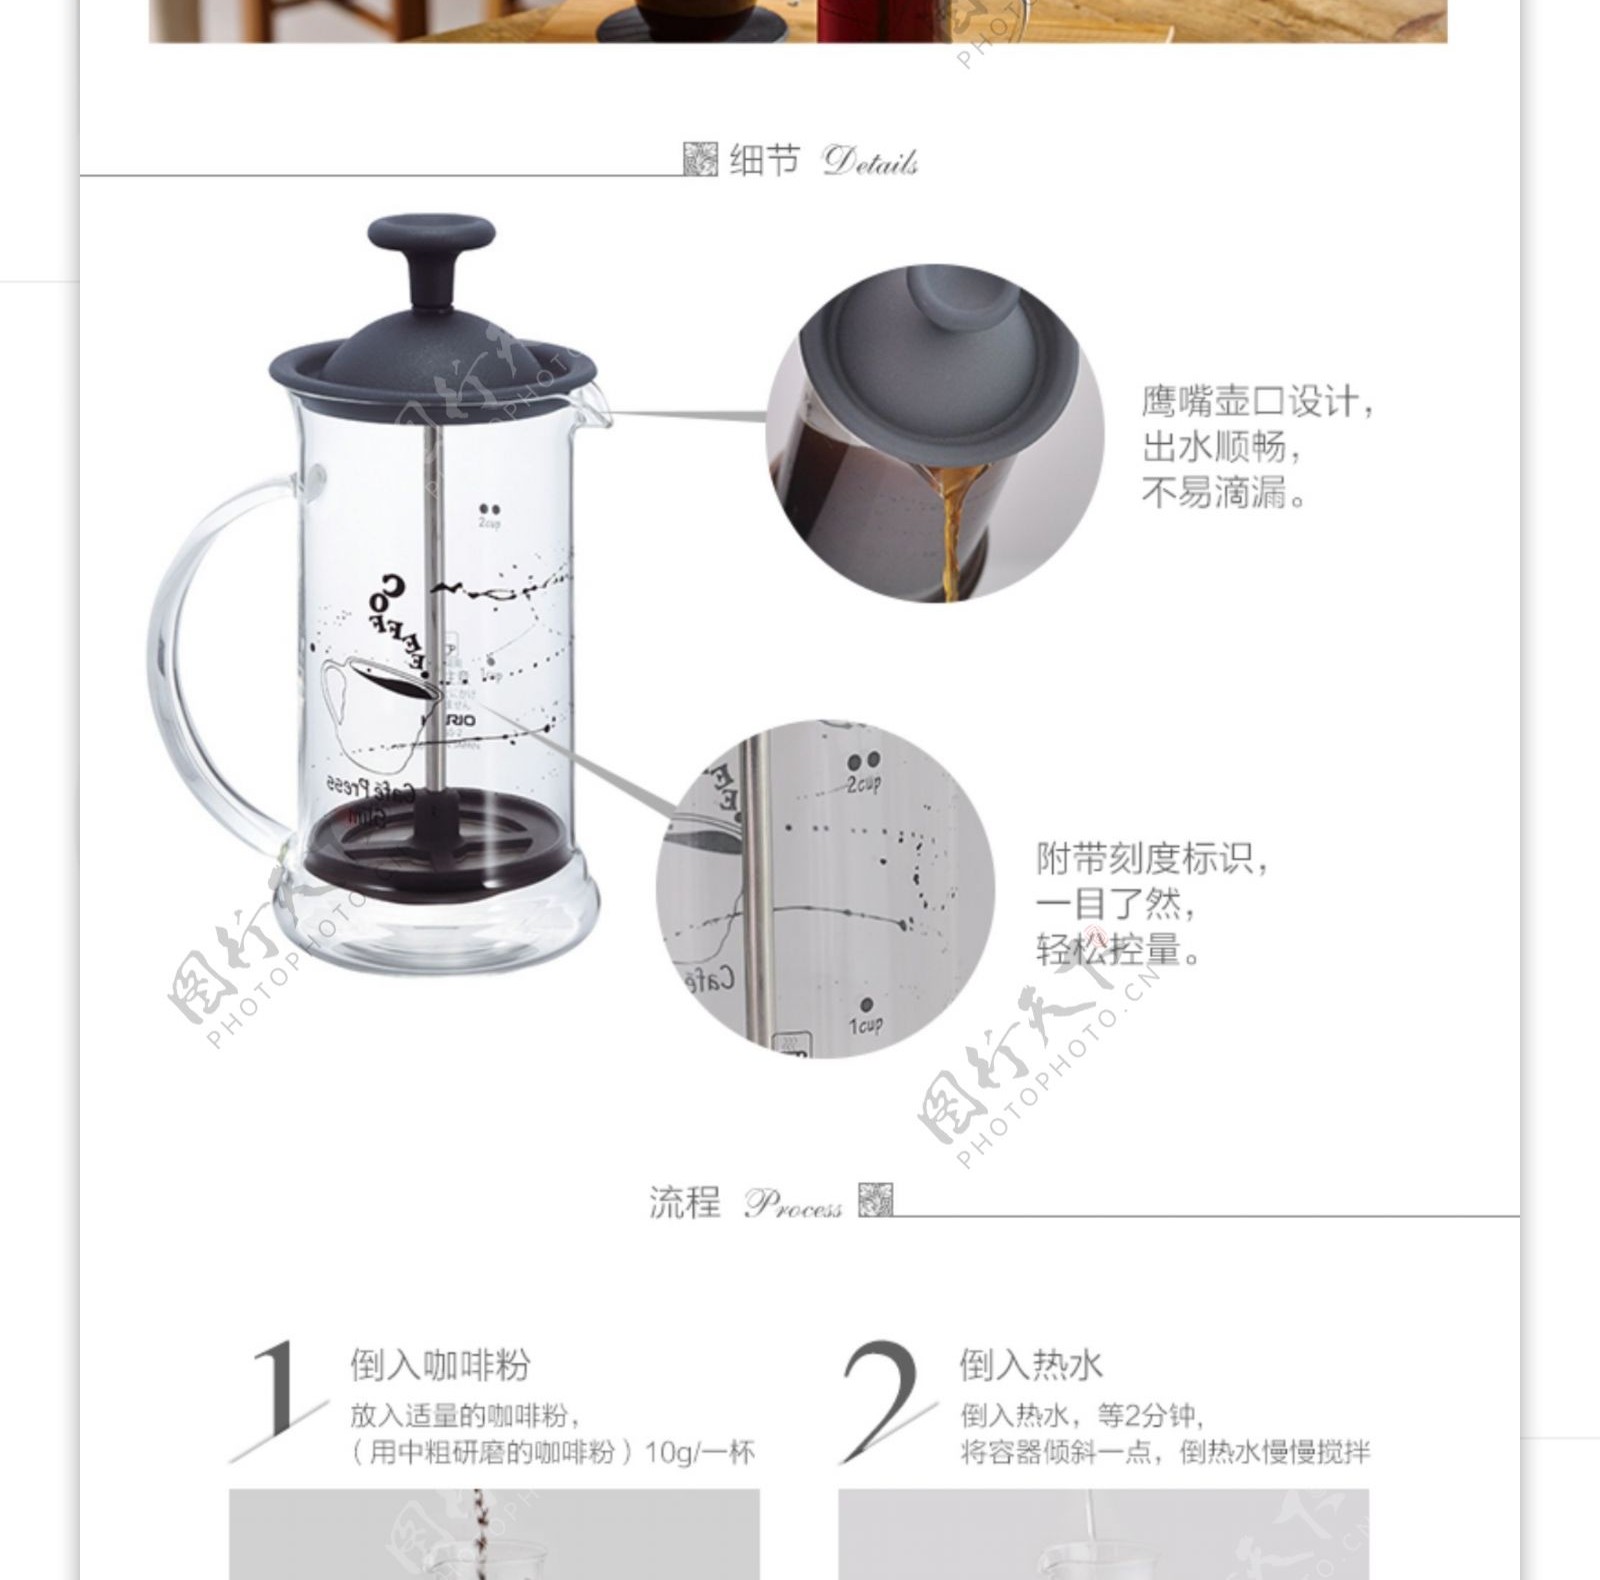 淘宝天猫详情页咖啡磨豆机